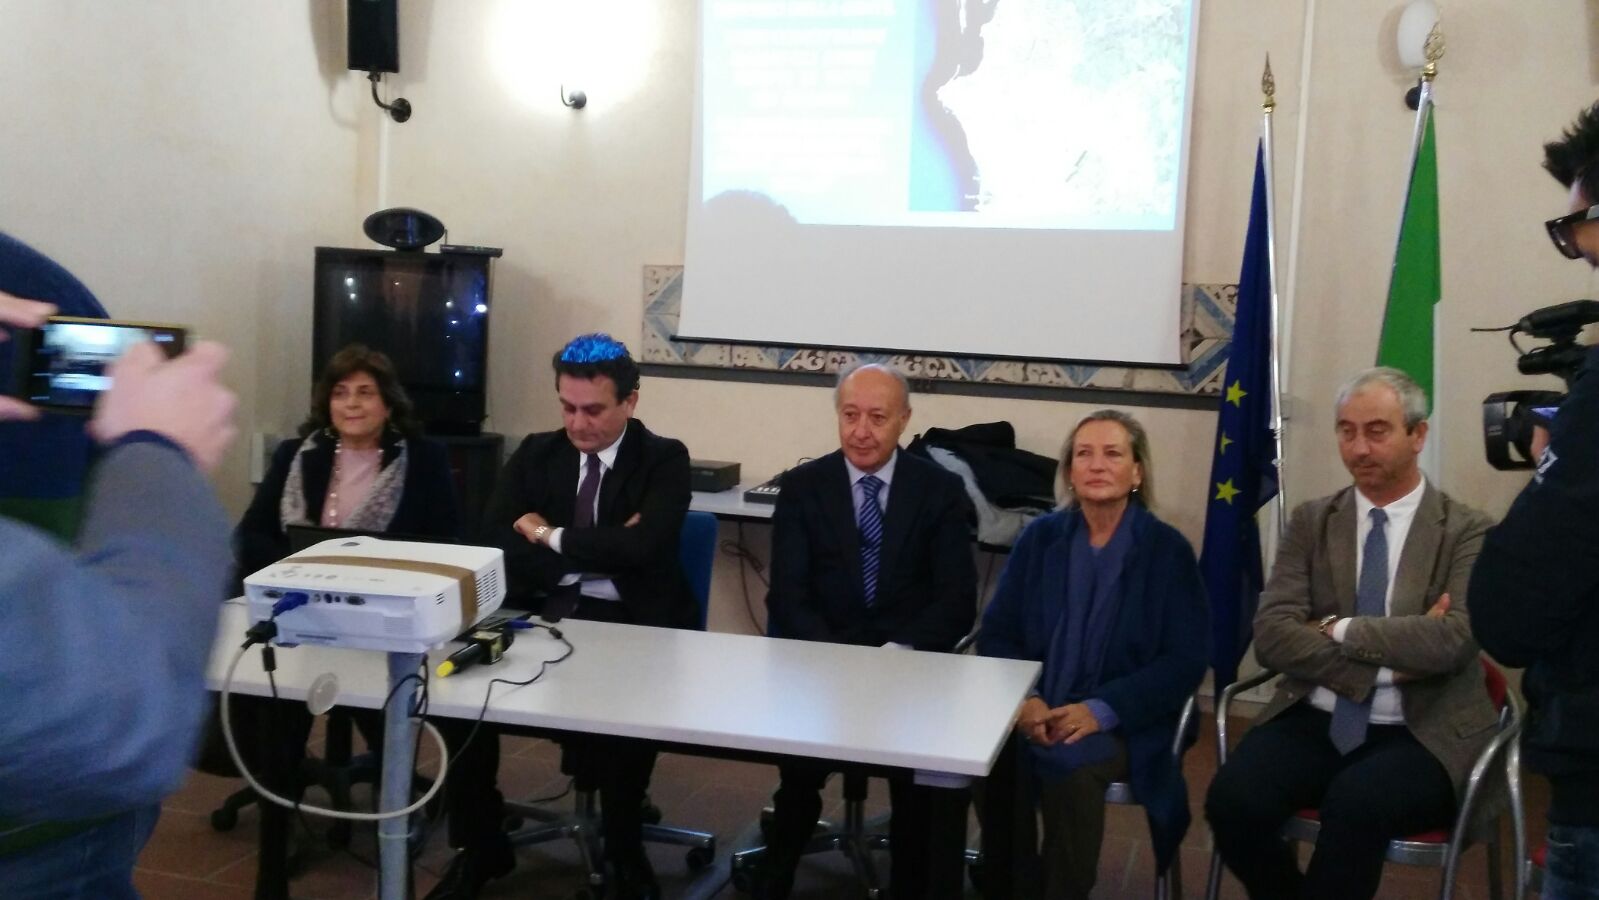 Conferenza stampa di fine anno, il sindaco Di Girolamo: “Ecco tutto quello che abbiamo fatto”